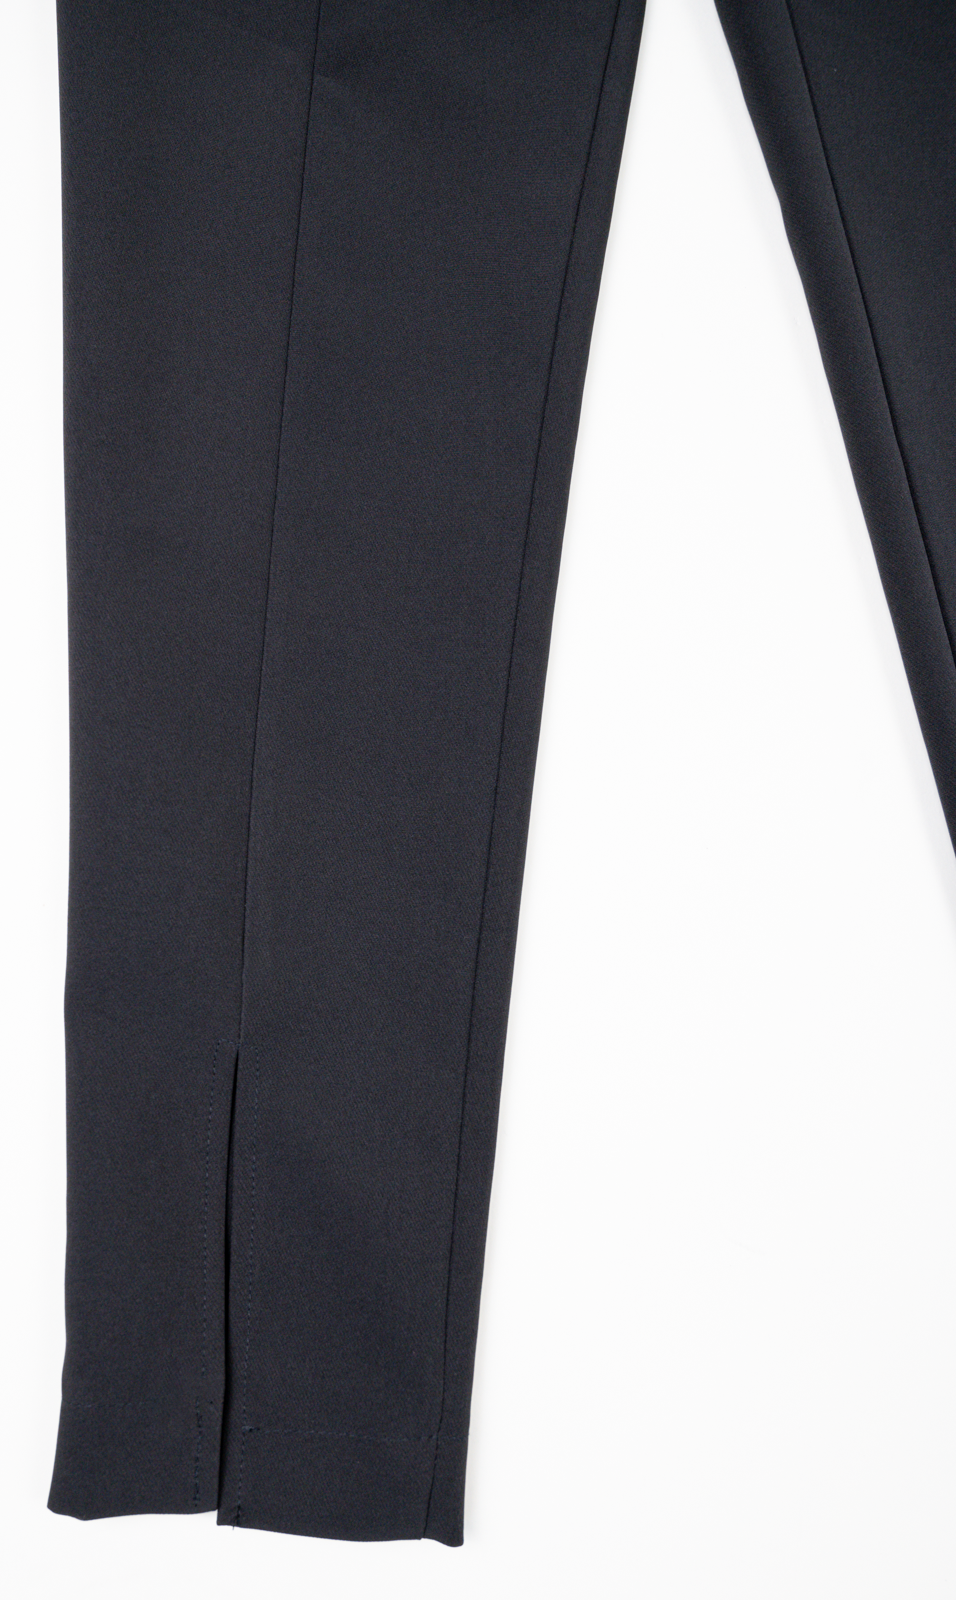 Pantalon dama office negru elegant cu talie inalta cu pense de cambrare •  Fofy Shop